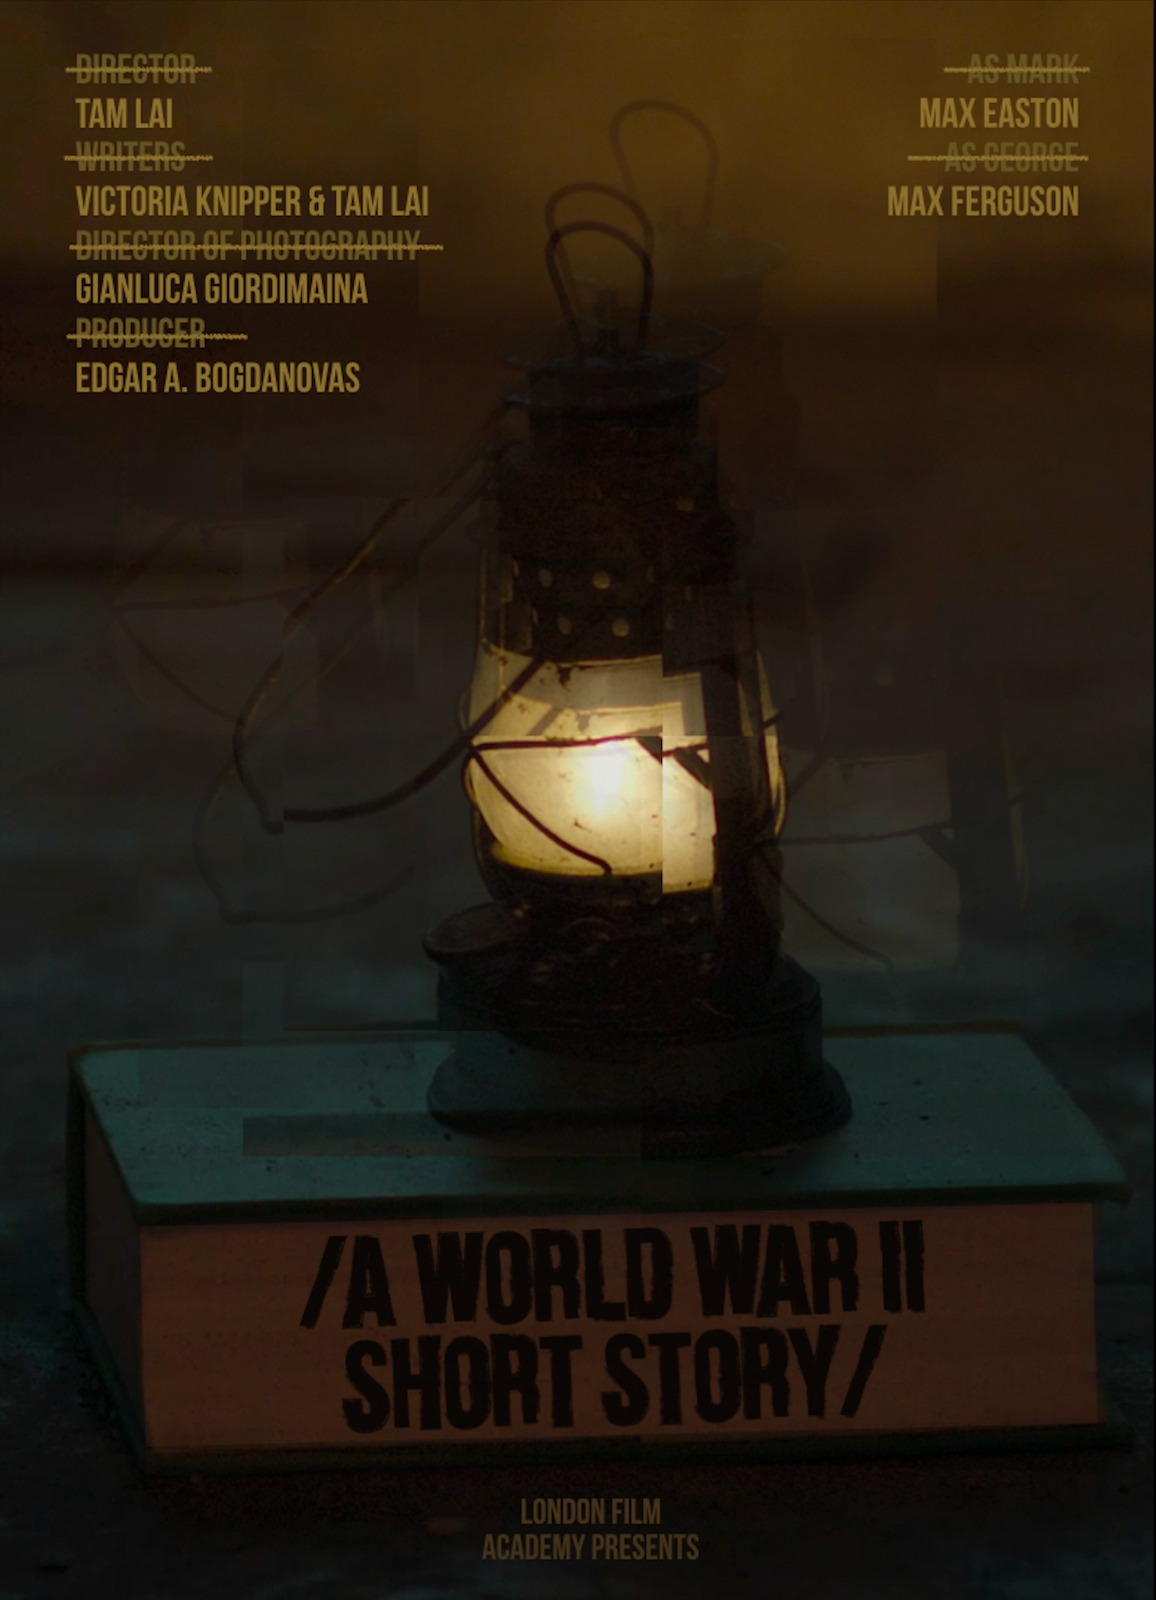 A World War II Short Story (2021)